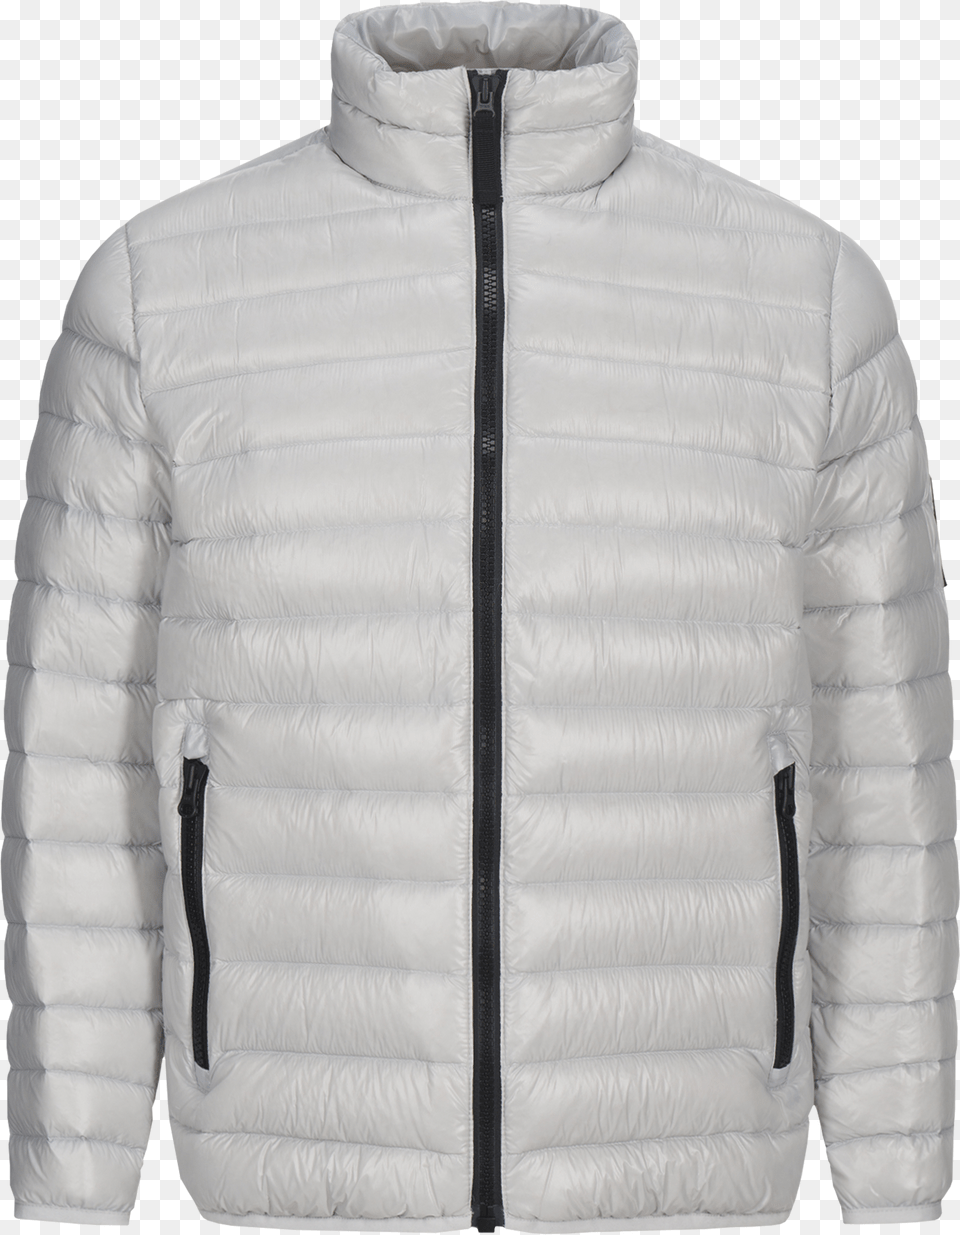 Ward Liner Jacket Antarctica Zipper, Clothing, Coat Png Image